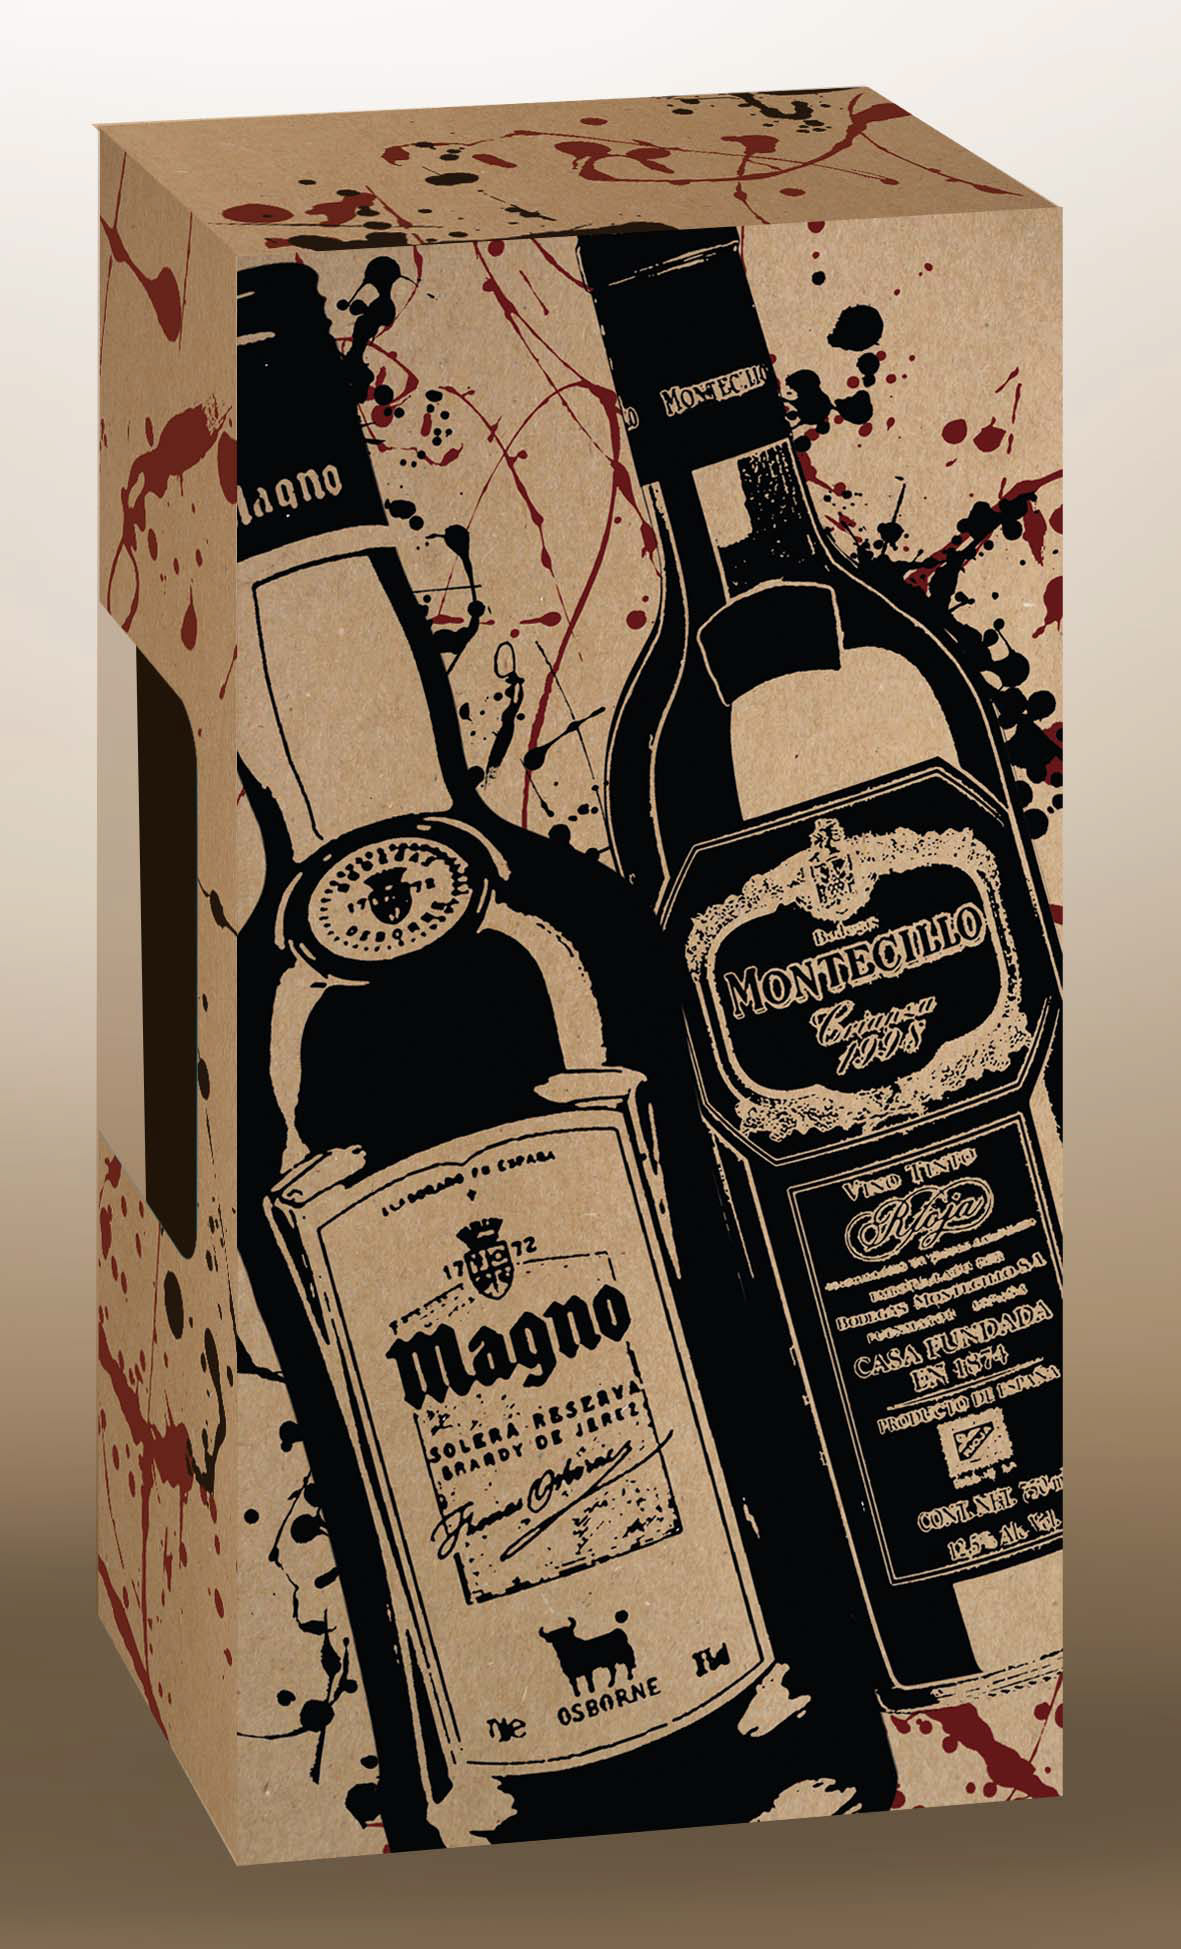 osborne empaque magno Montecillo Anis del mono publicidad Vinos